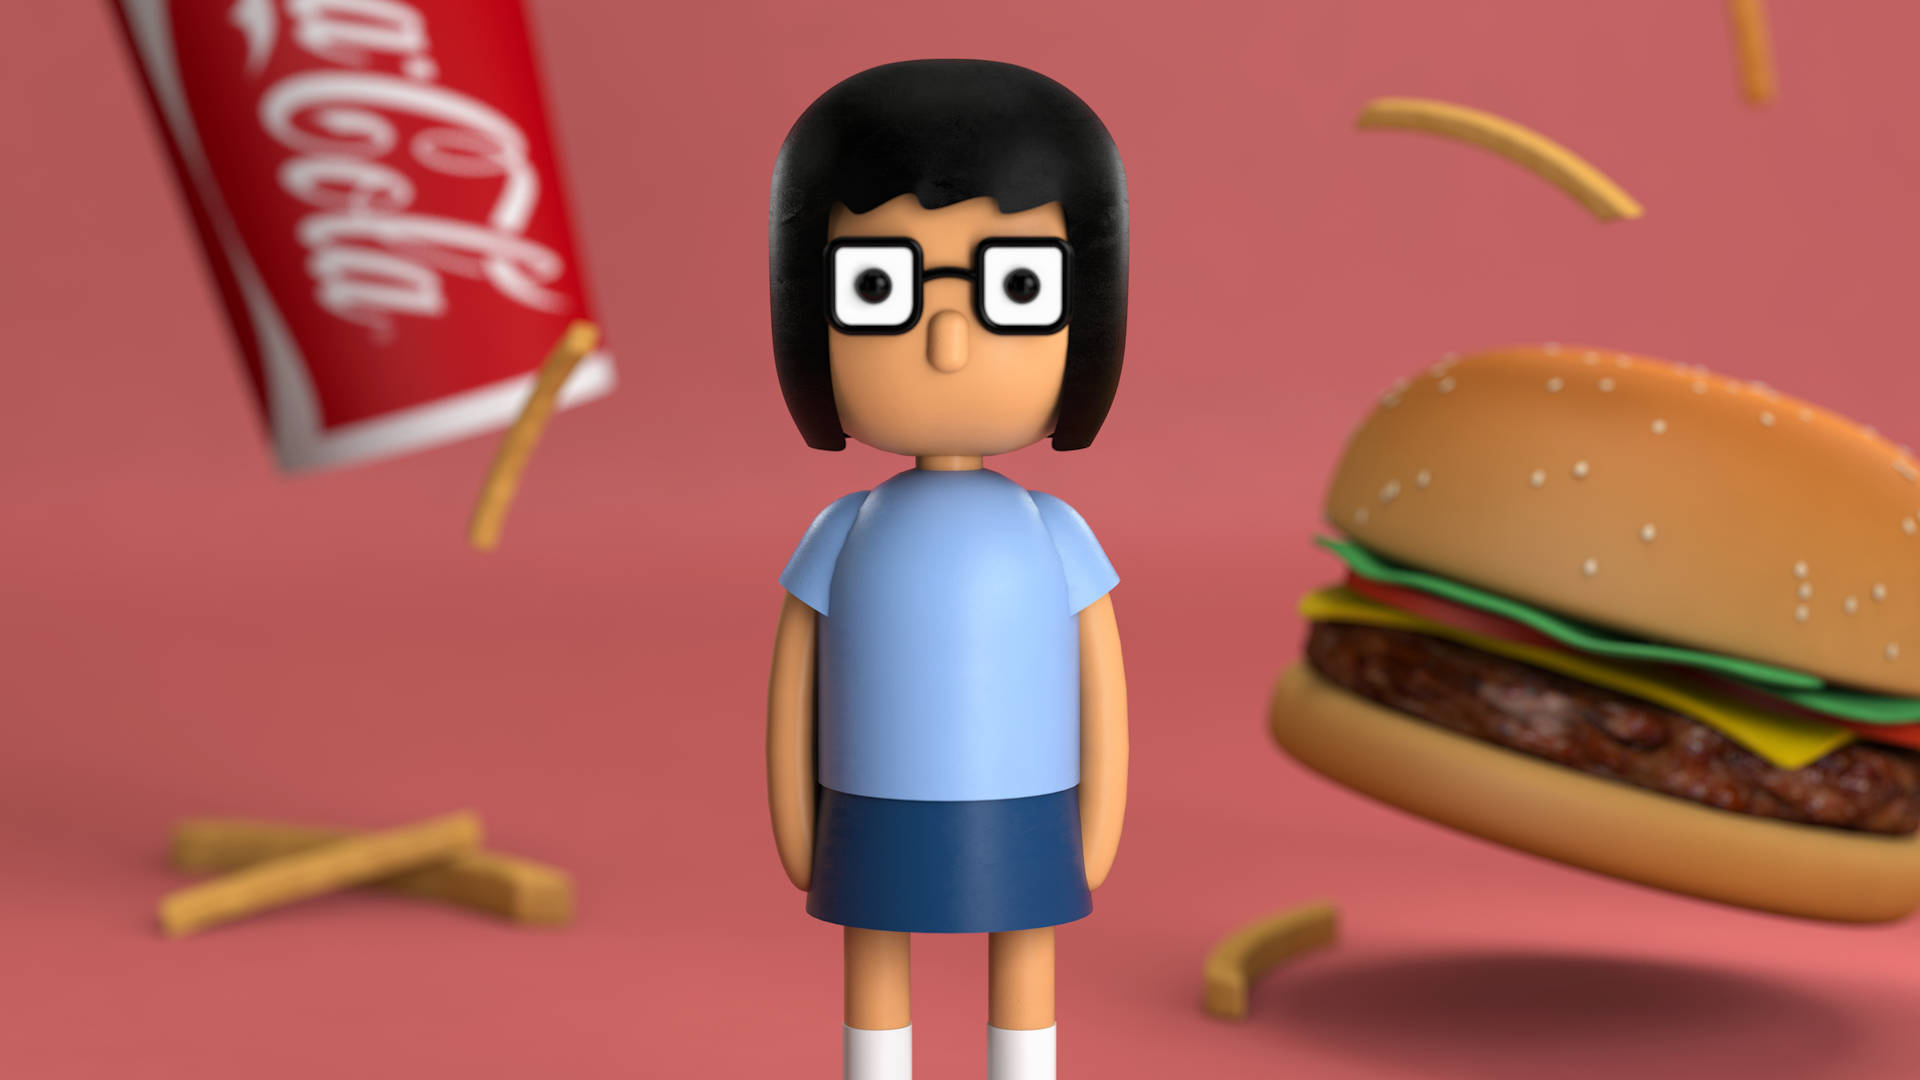 Aslegendas Da Minha Tela Do Celular São De Bob's Burgers Com A Personagem Tina Belcher Em Argila. Papel de Parede